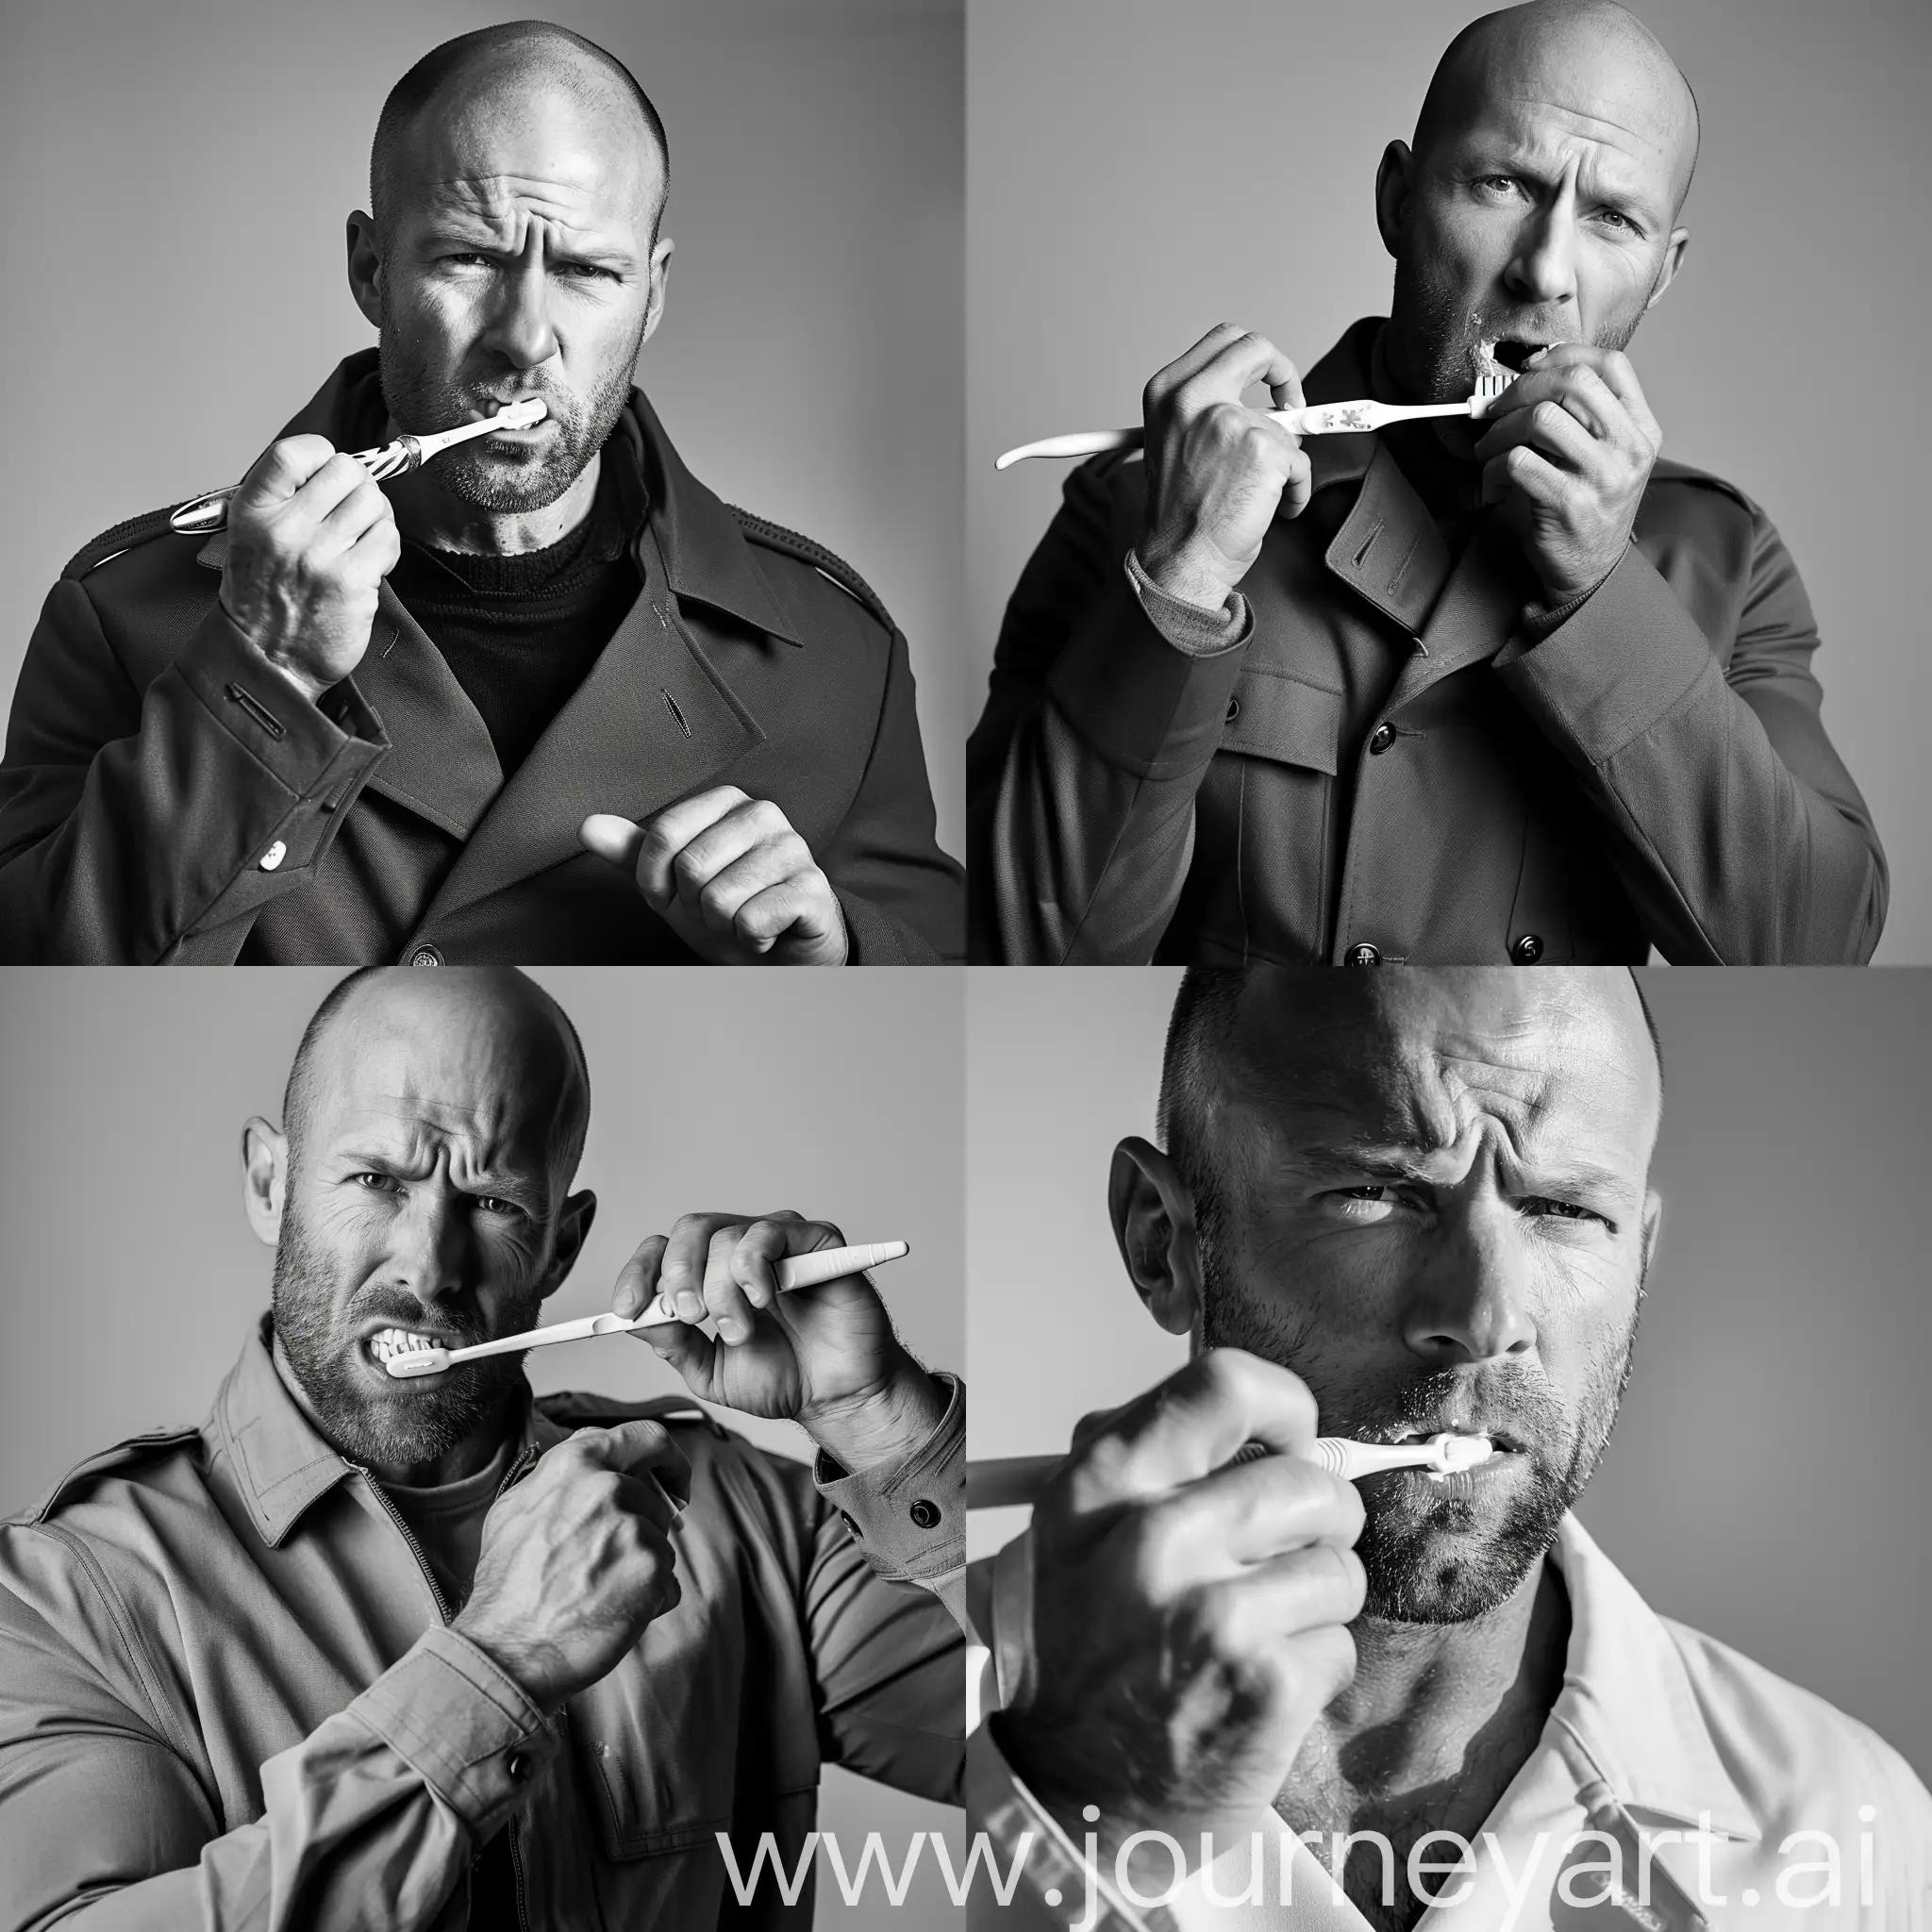 Jason-Statham-Stylishly-Brushing-Teeth-in-Black-and-White-Magazine-Photo